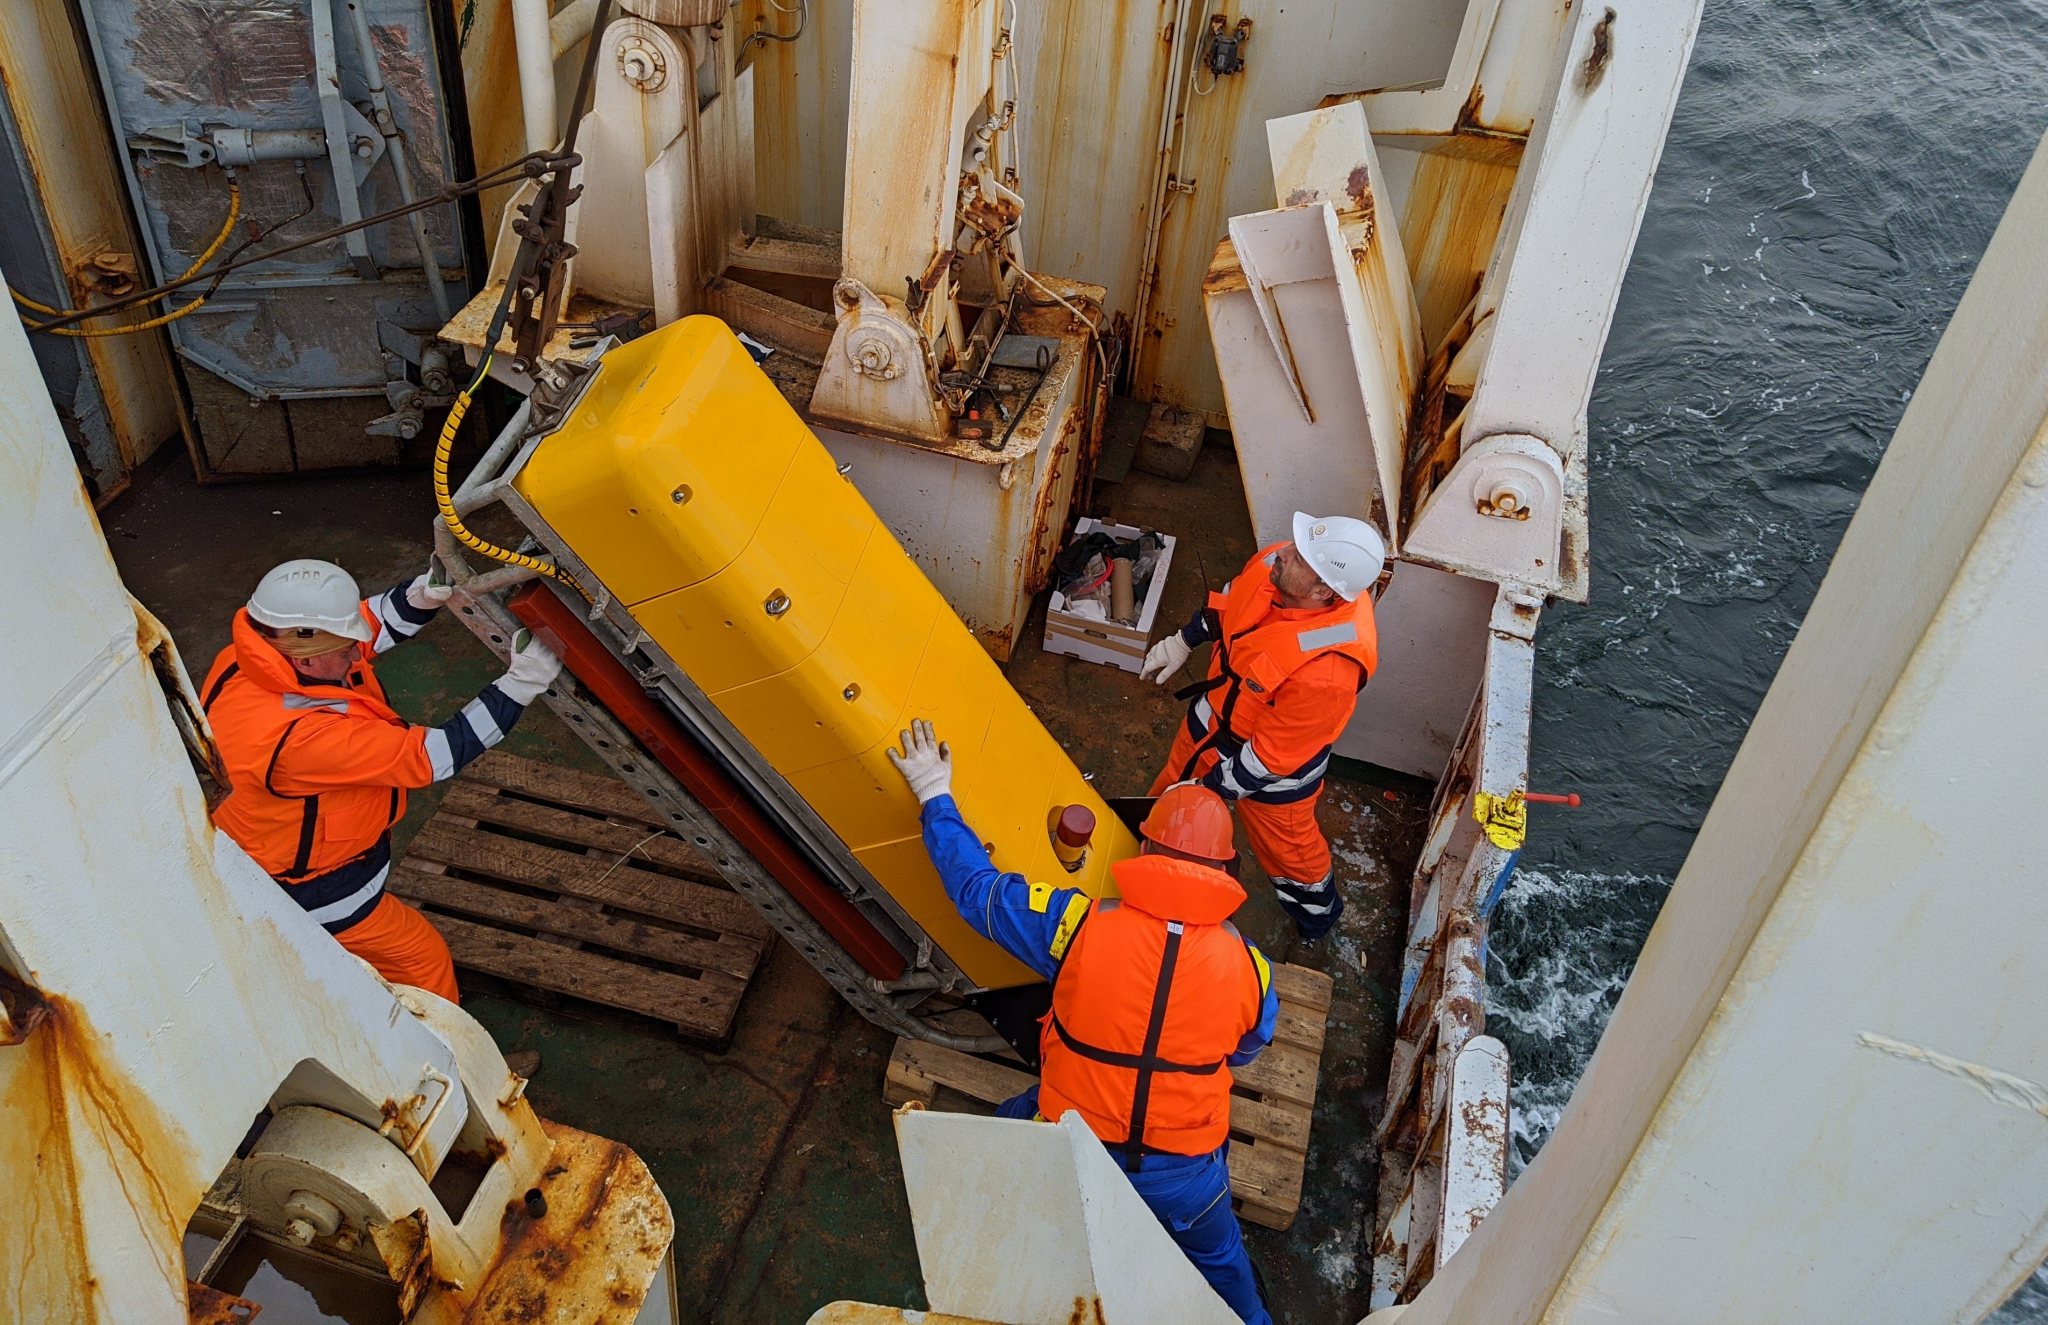 Завершился первый этап морских исследований в рамках проекта Arctic Connect